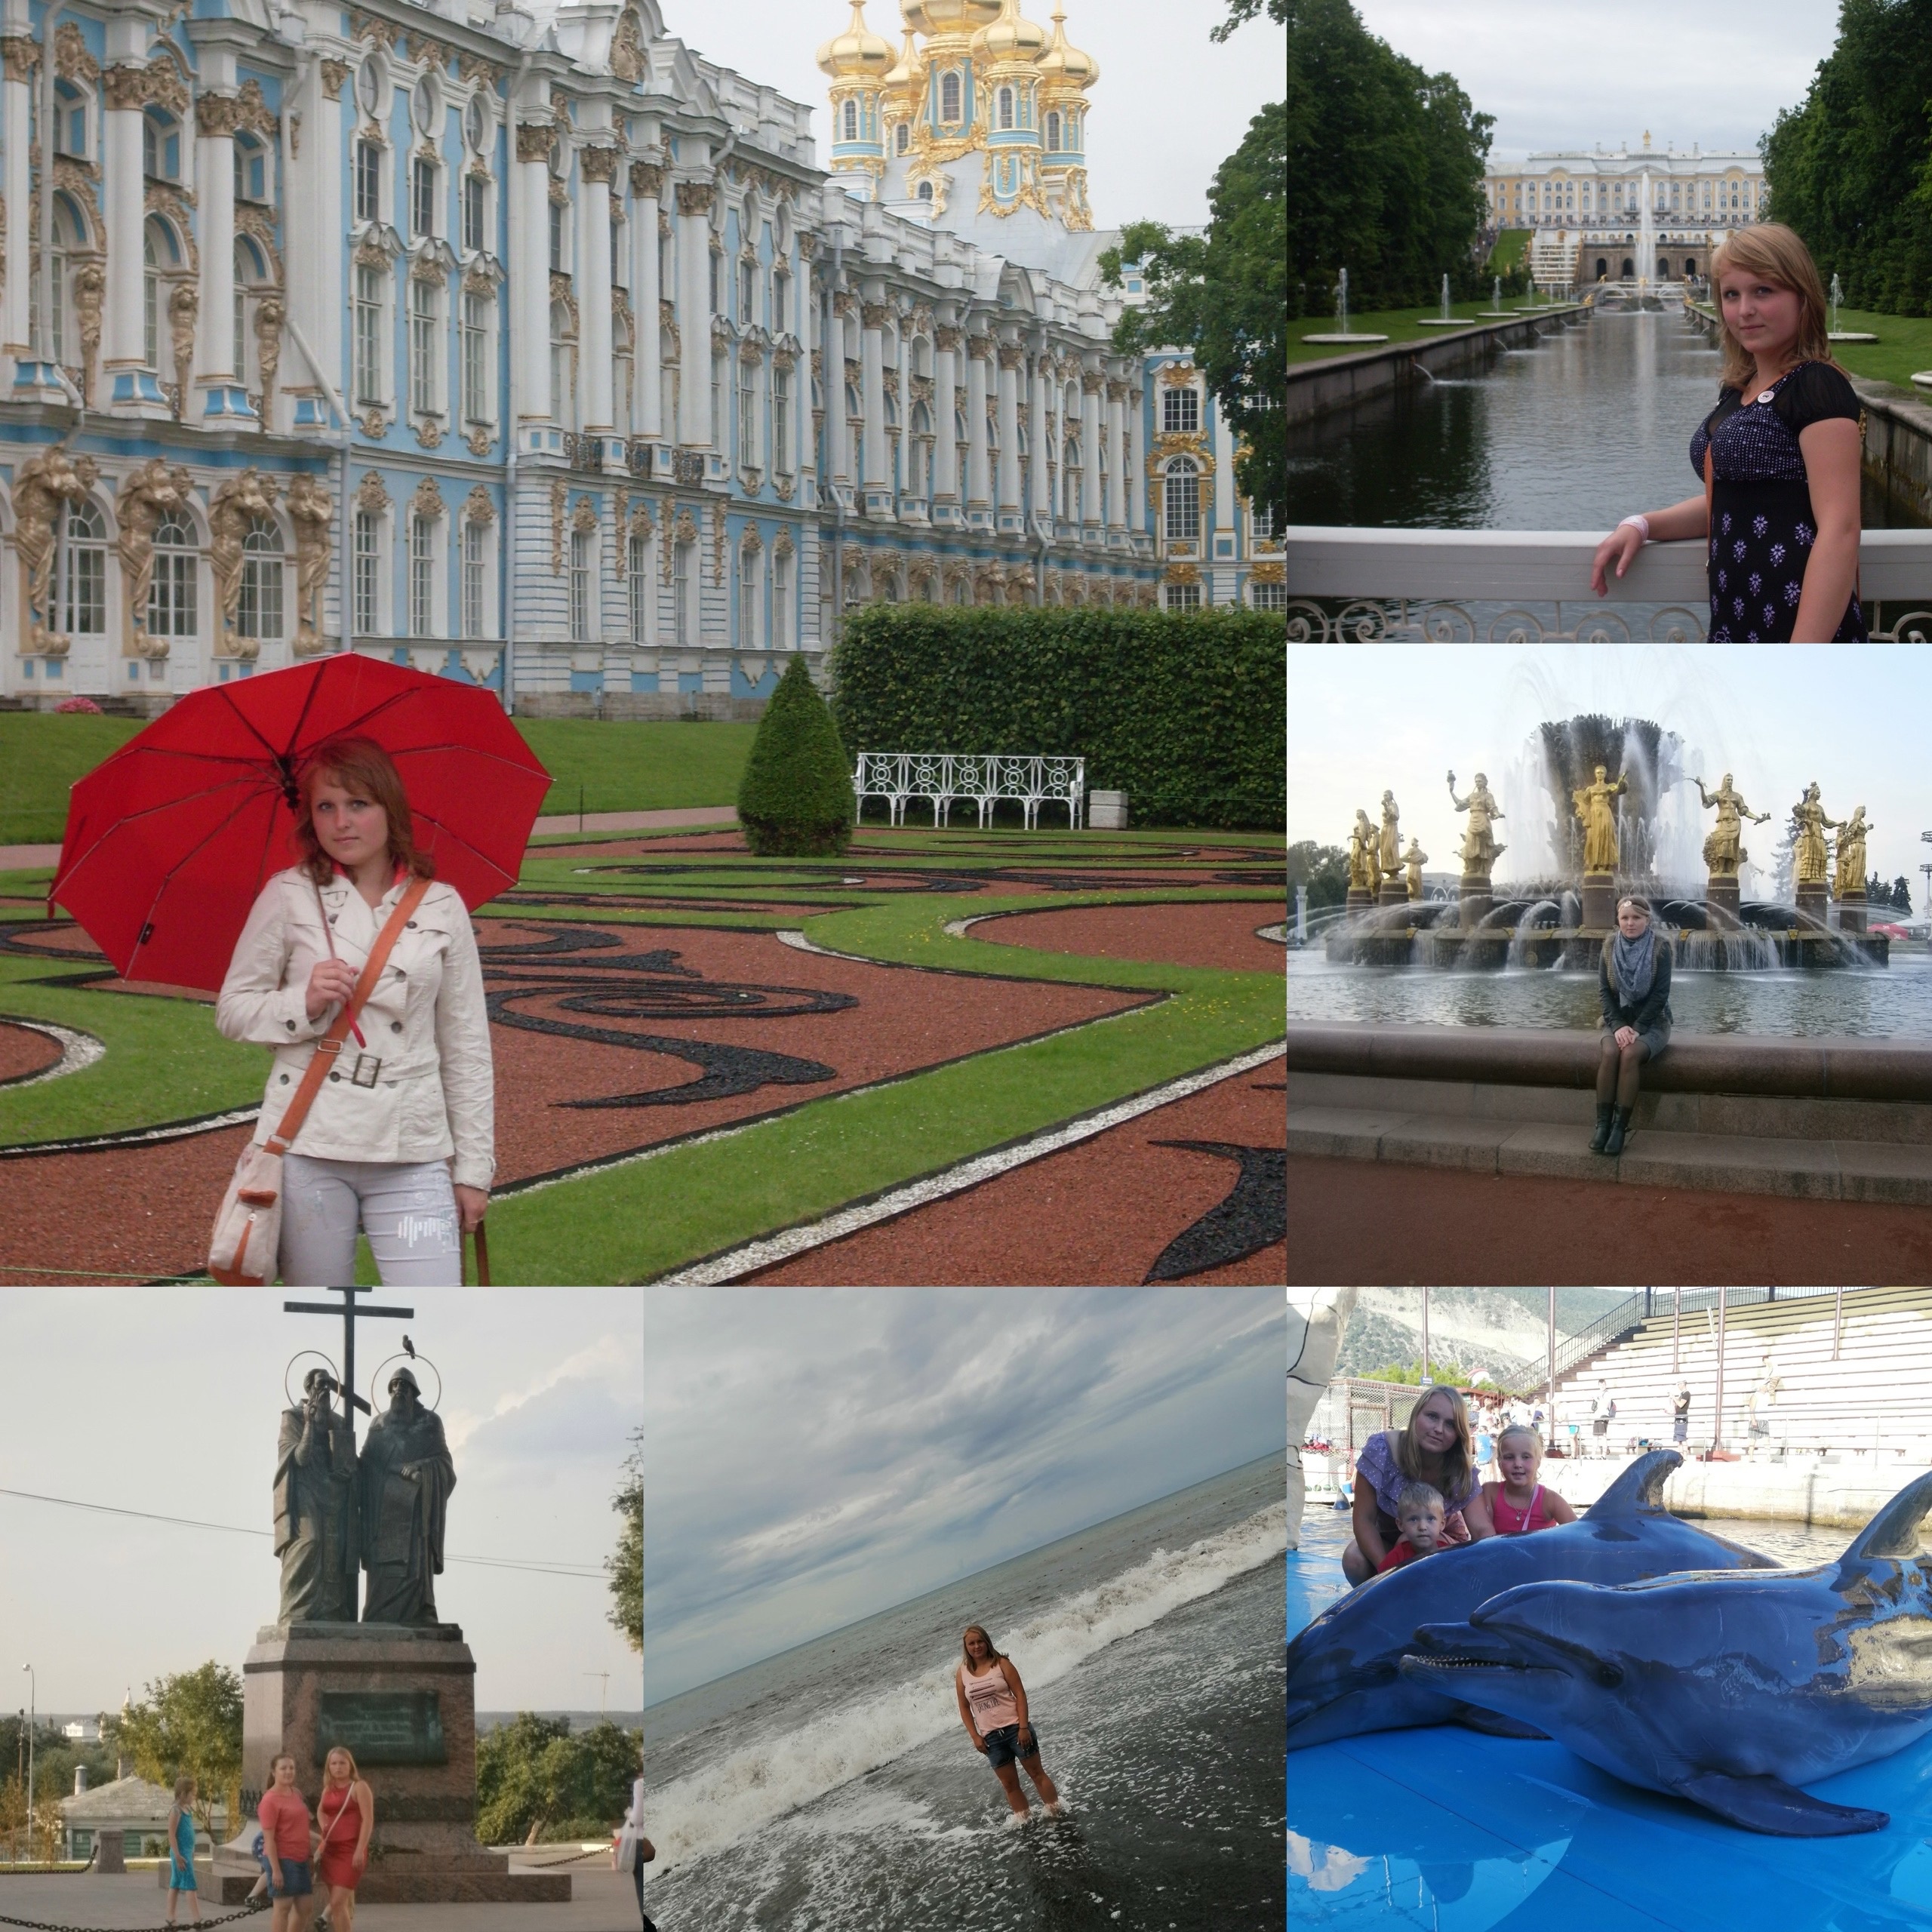 Сидикова Татьяна Сергеевна участвует в фоточеллендже «Я люблю свою страну».